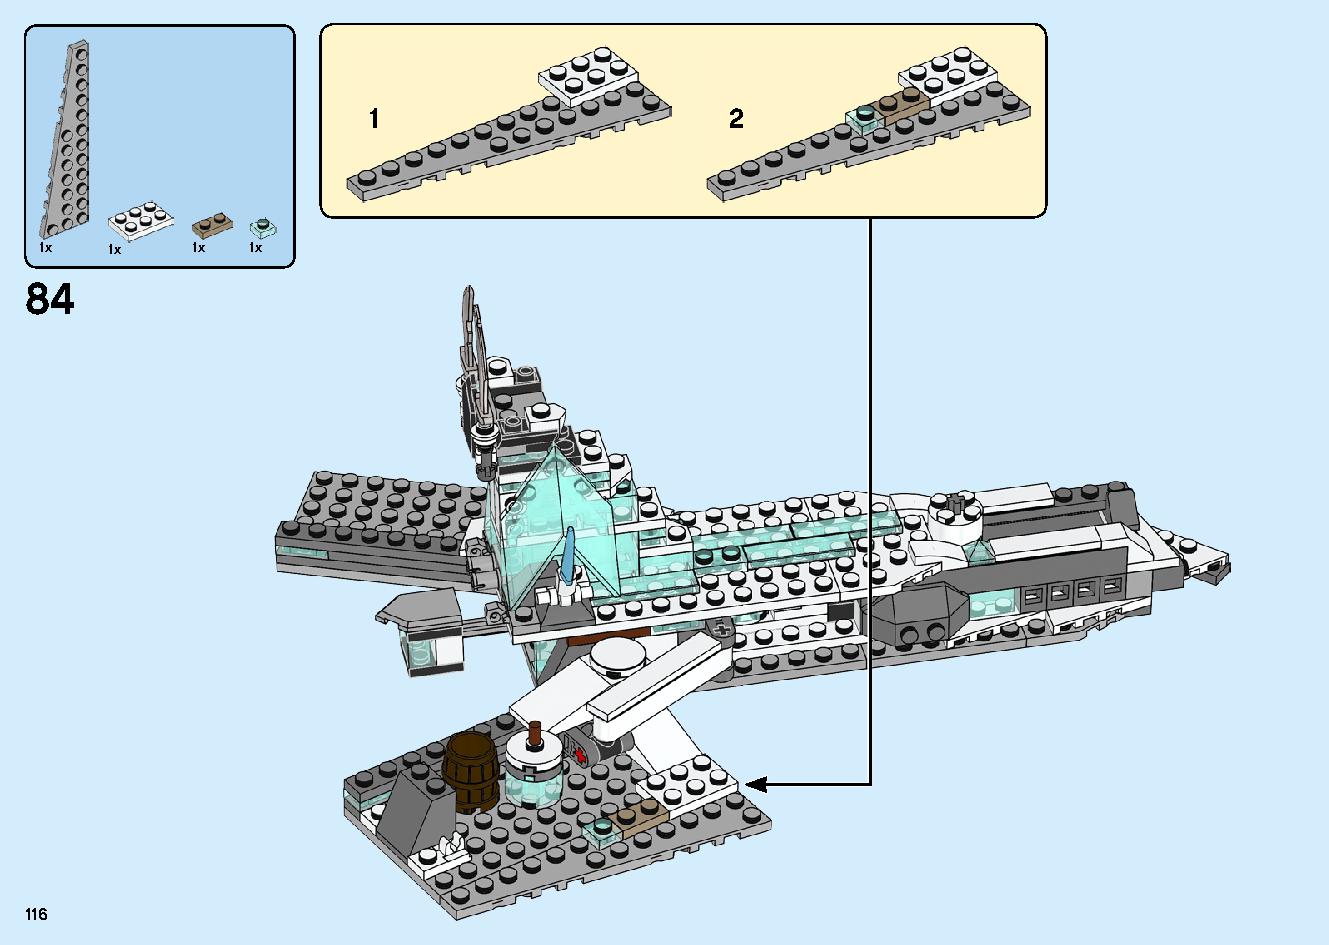 魔境のブリザード神殿 70678 レゴの商品情報 レゴの説明書・組立方法 116 page